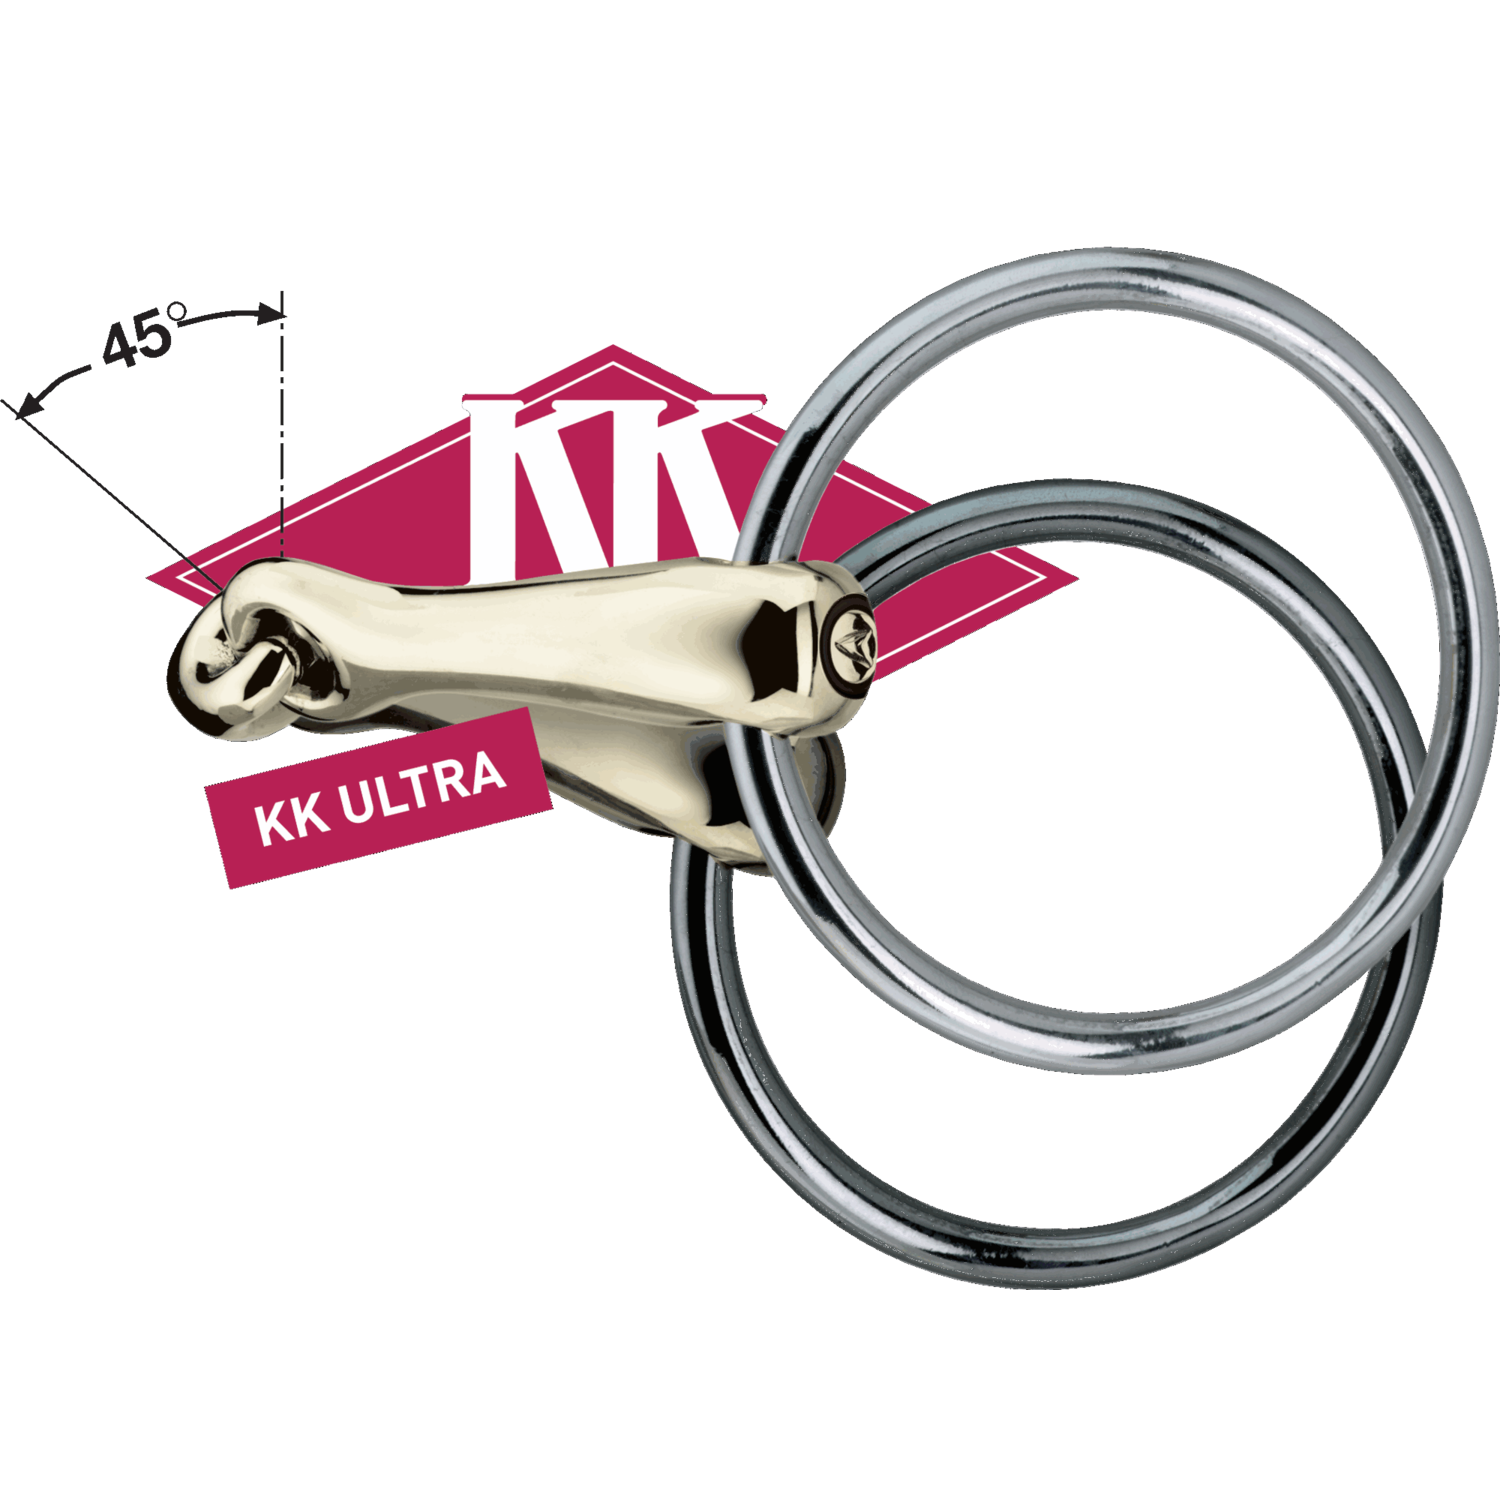 KK ULTRA 16 mm | Logo_KK_ULTRA_mit_45_Grad_Winkel_Sensogan.png | 1704463694